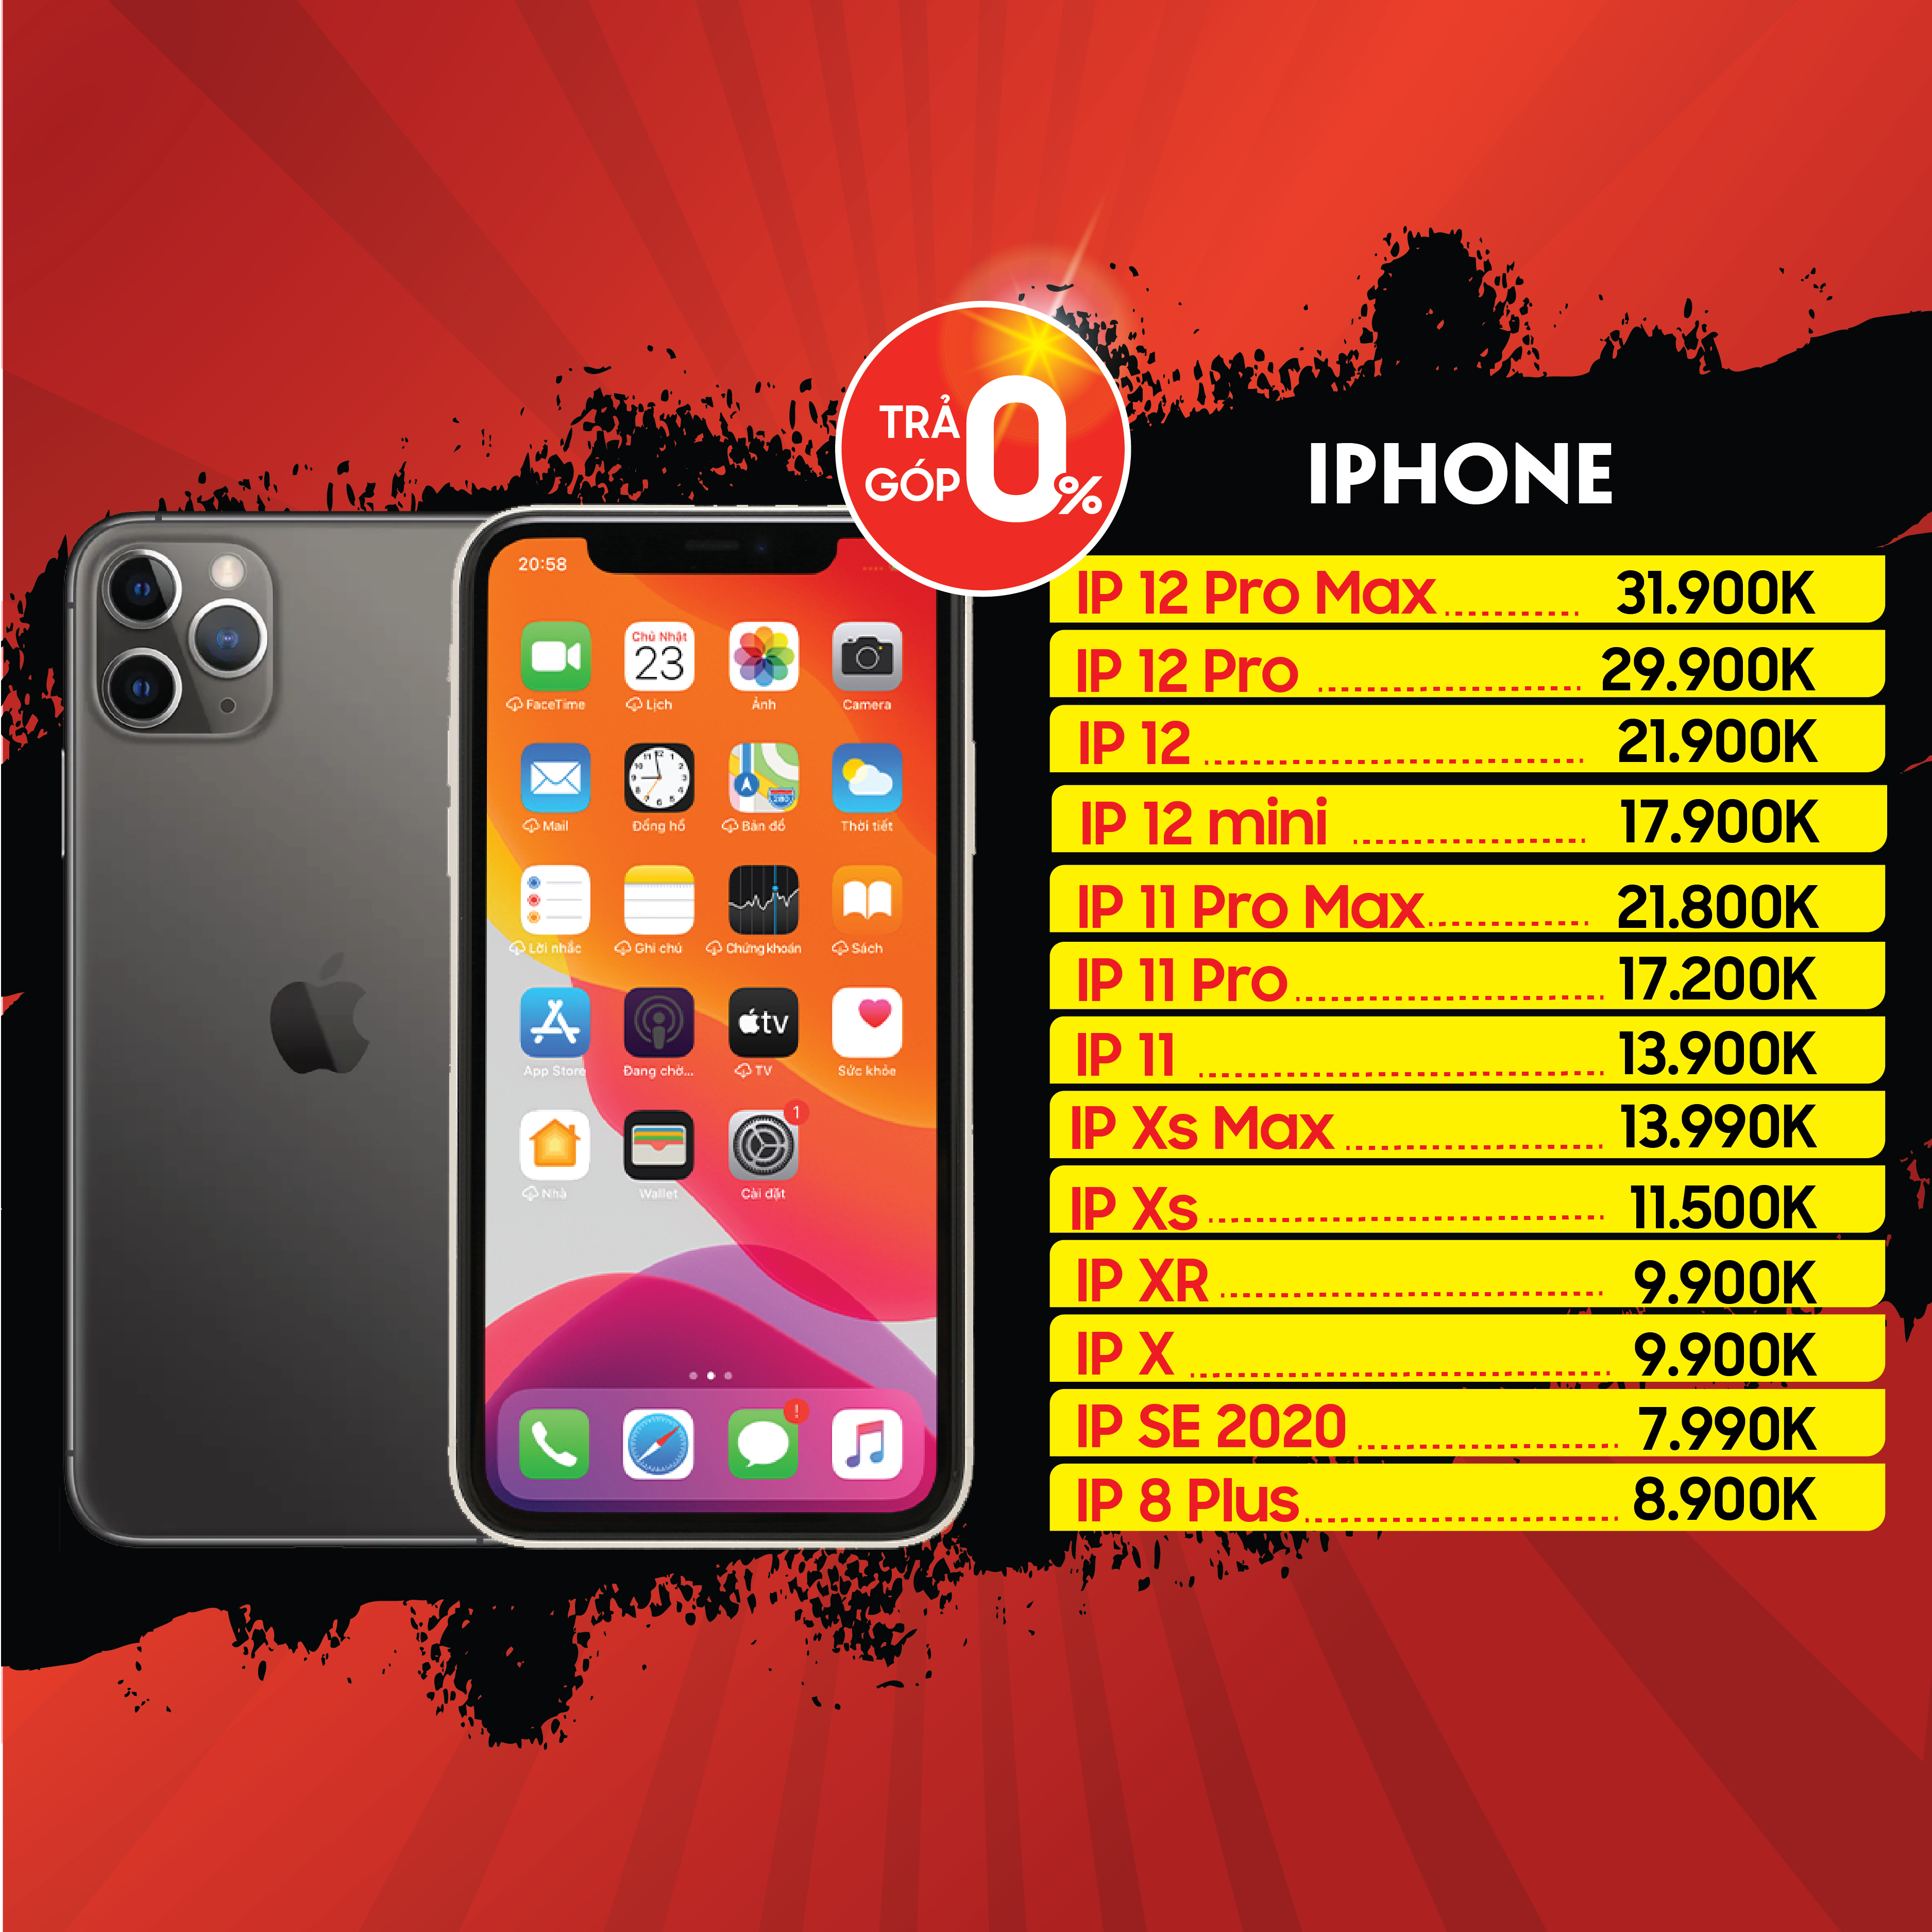 Bảng giá iPhone giảm giá tại Hải Phòng